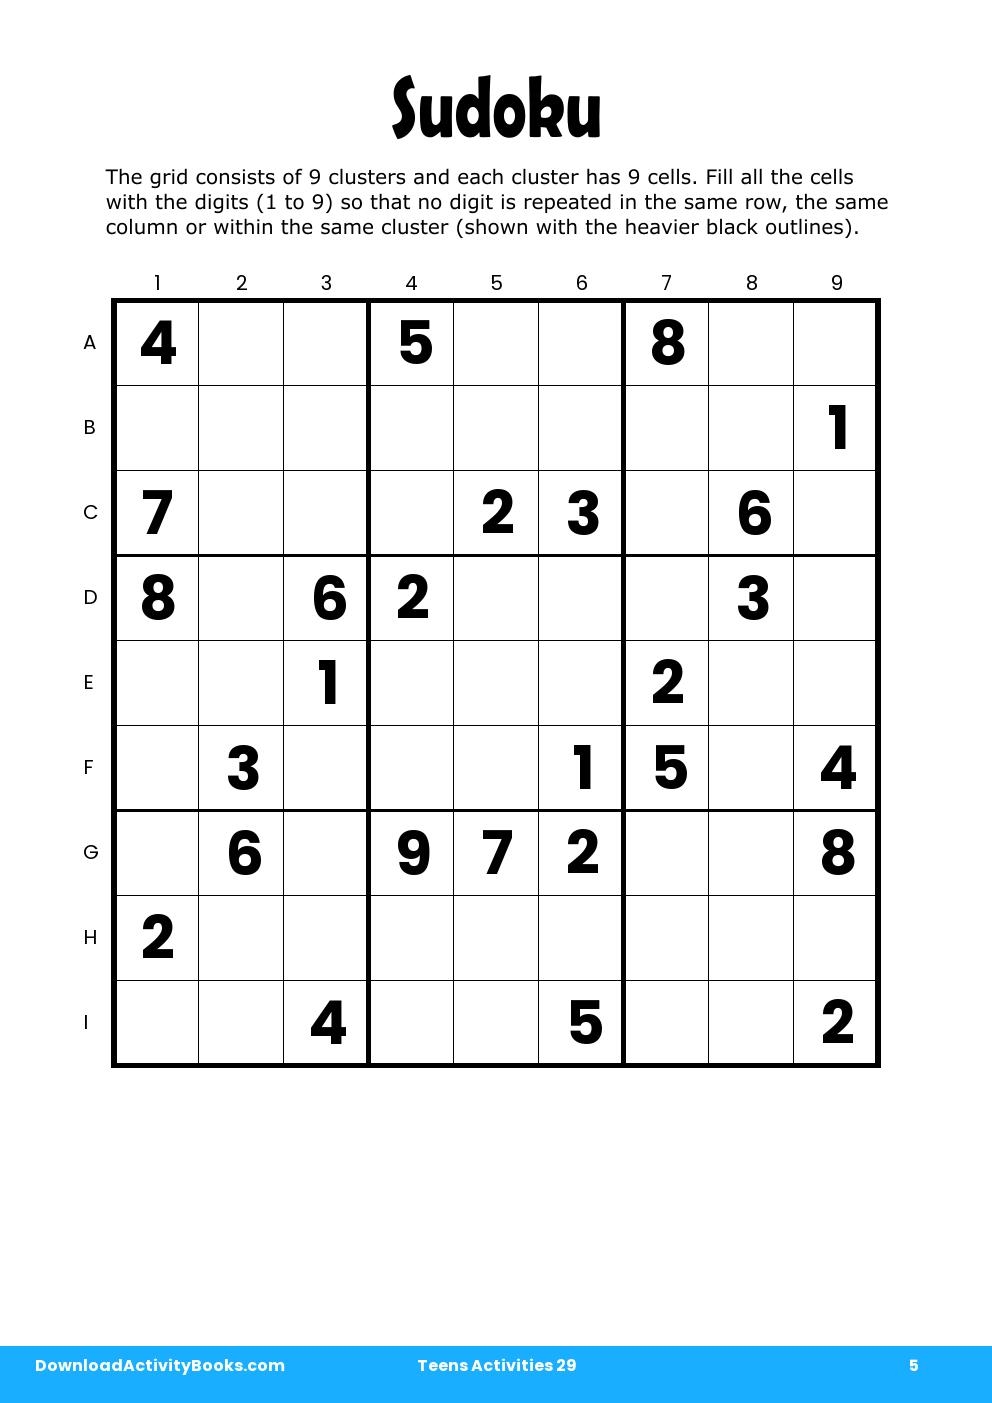 Sudoku in Teens Activities 29